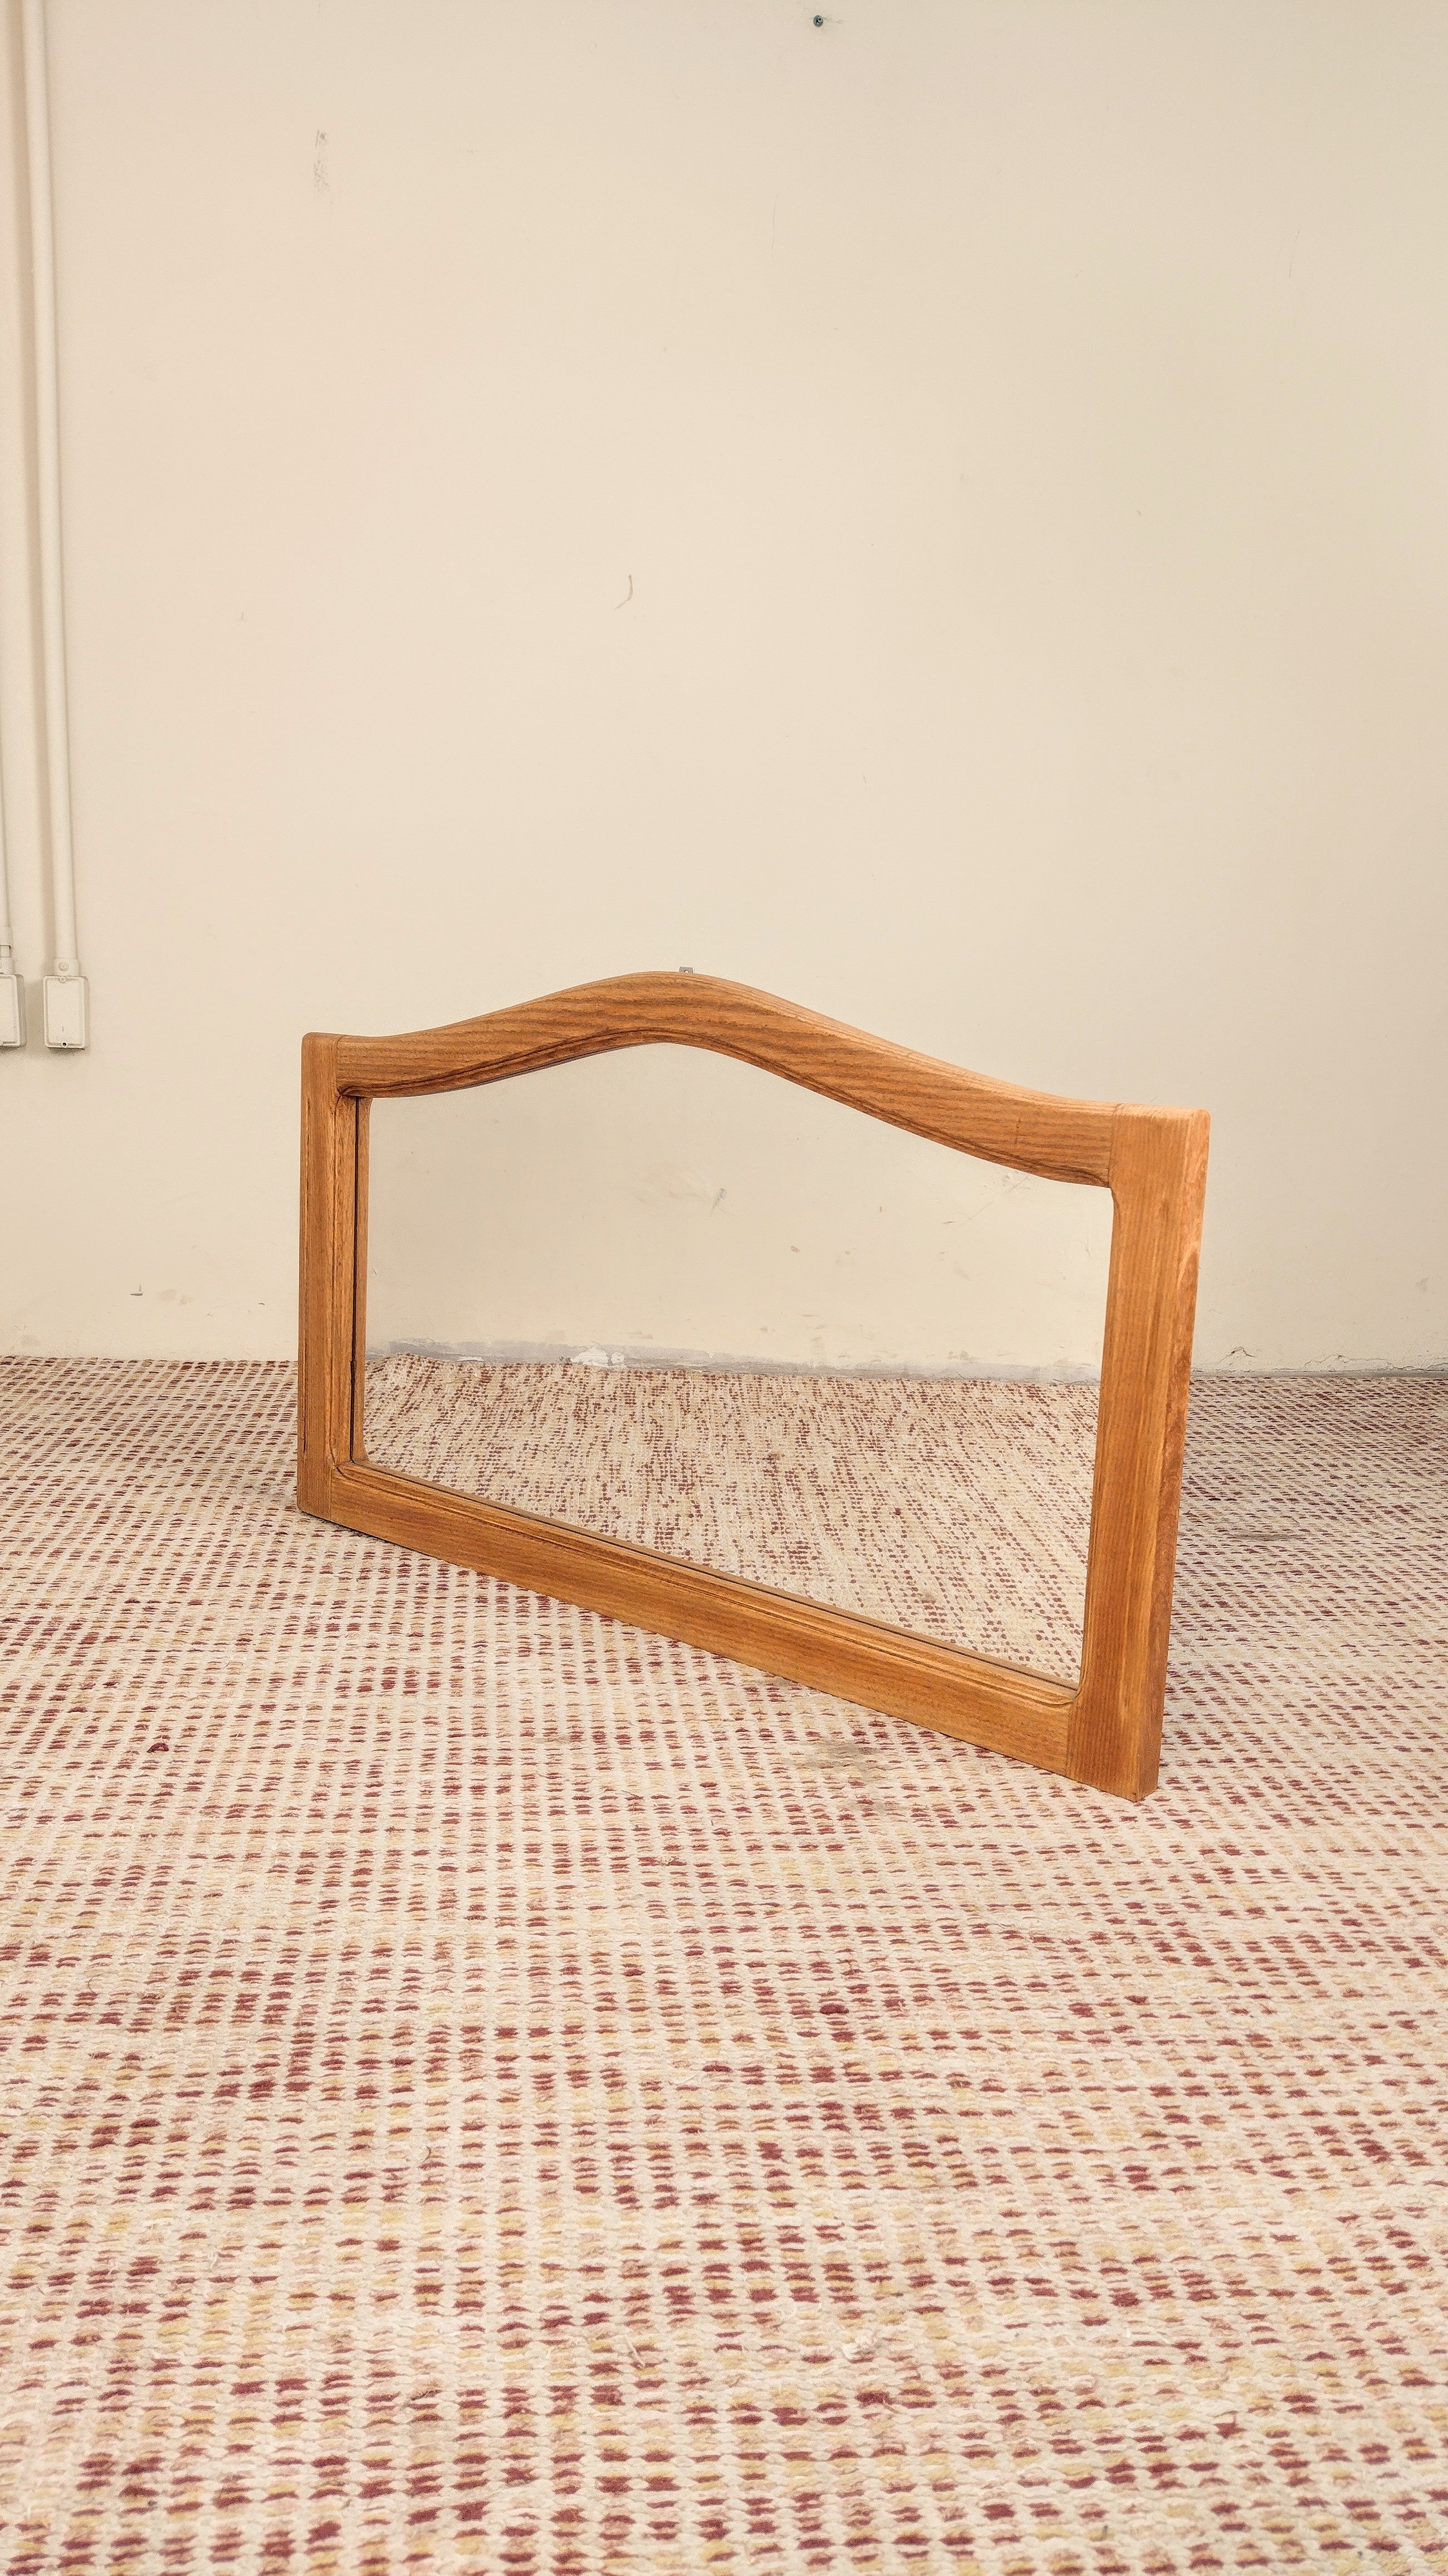 Espelho horizontal anos 70 em Cerejeira maciça (100cm X 58cm)